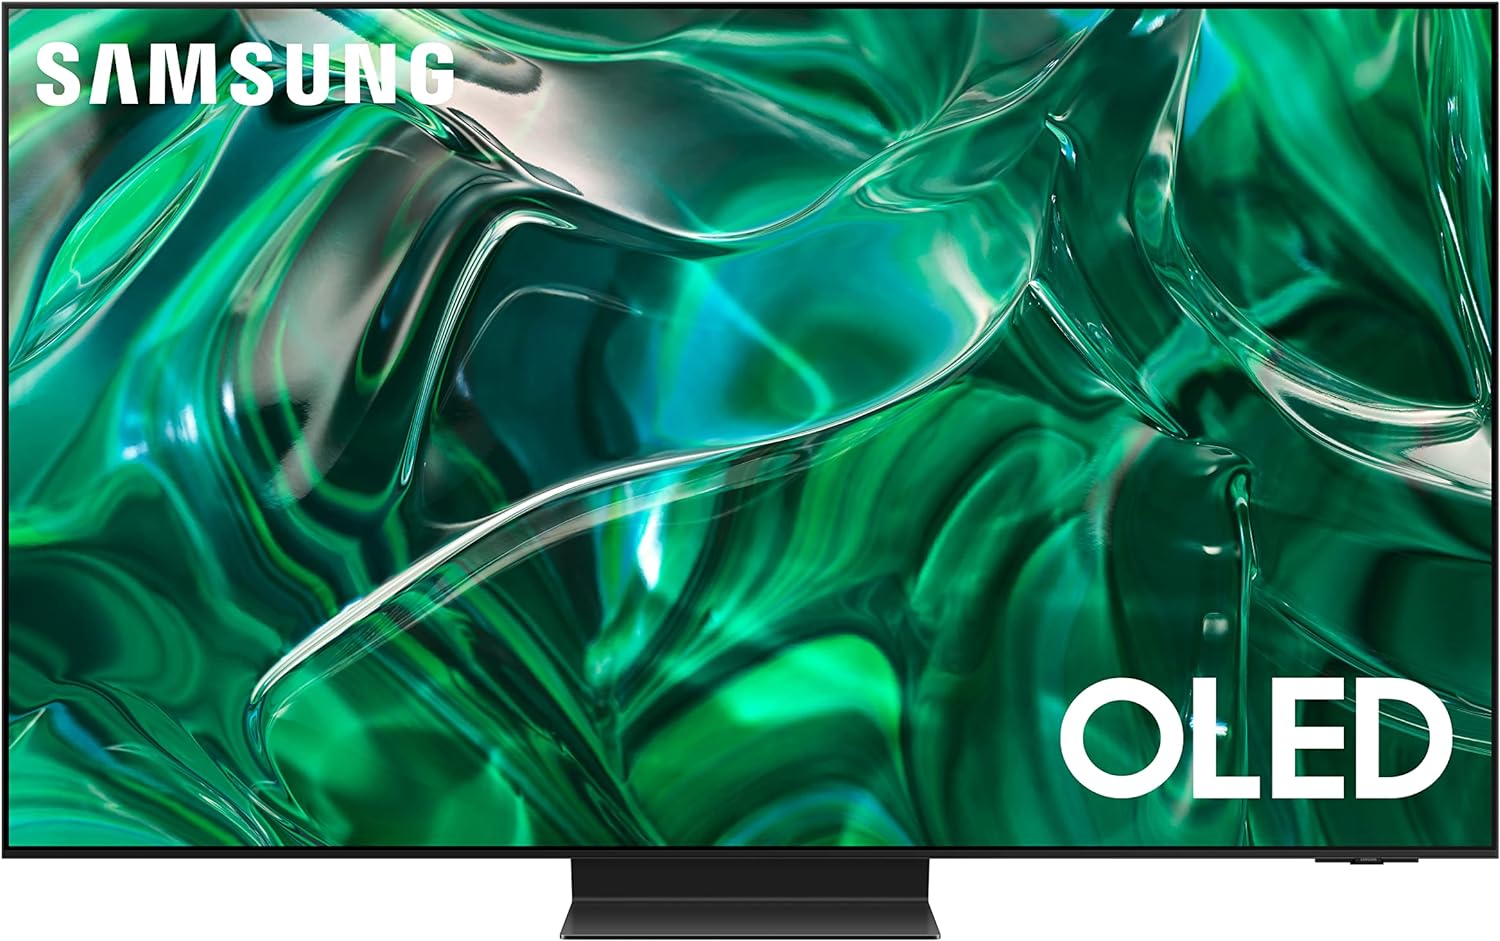 65" Samsung OLED S95C Series Quantum 4k HDR TV